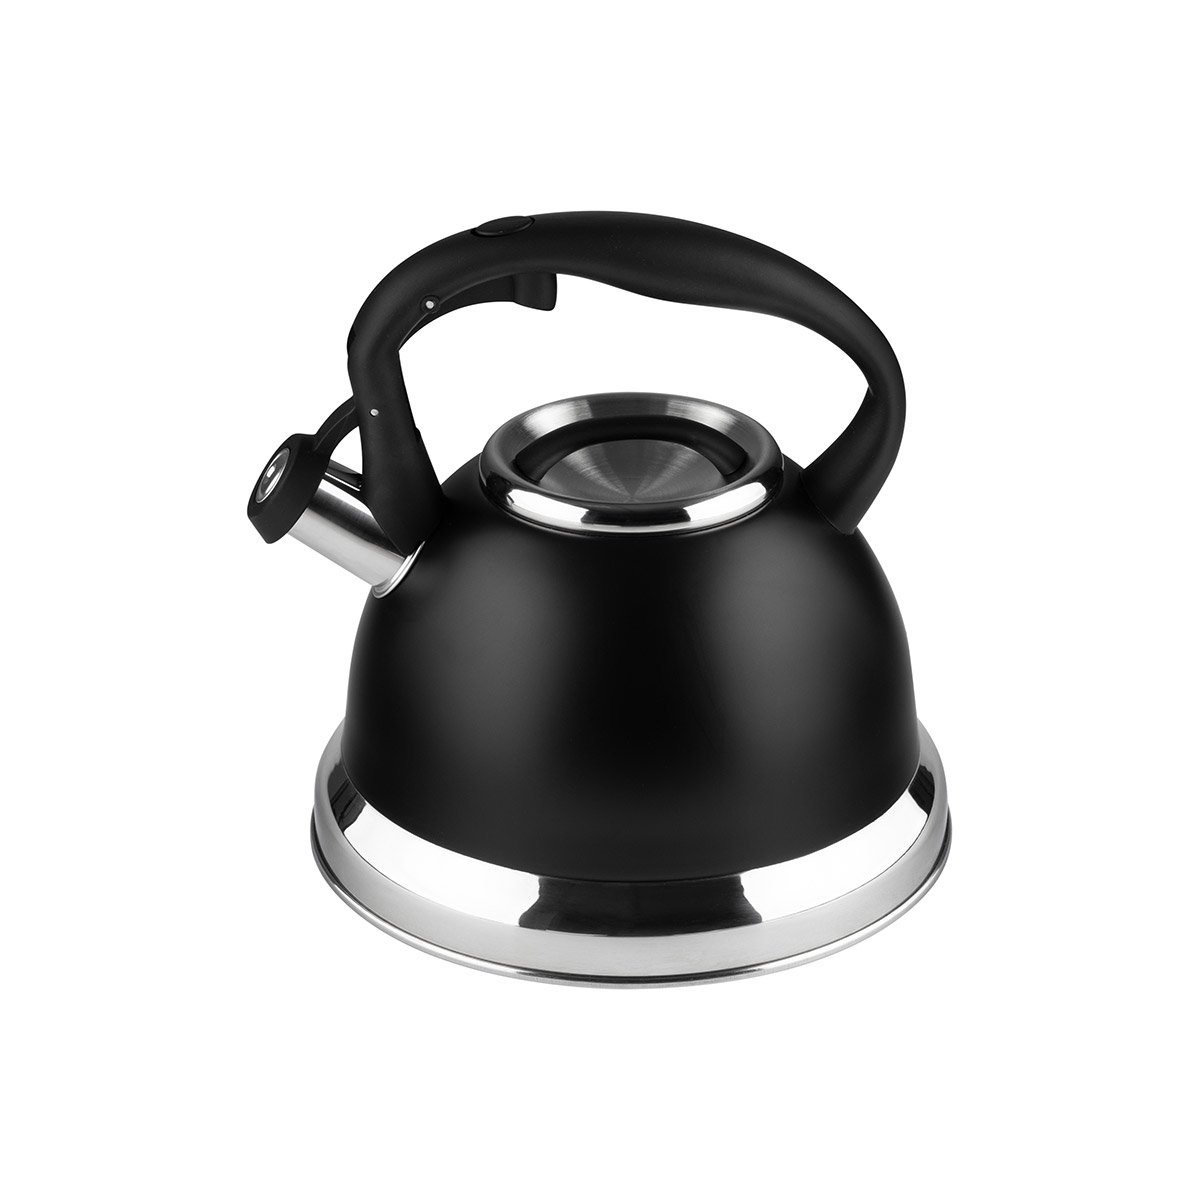 Чайник CLASSICO STILE, объем 3,5 л, из нерж стали со свистком, черный матовый, ручка с soft-touch (985622)